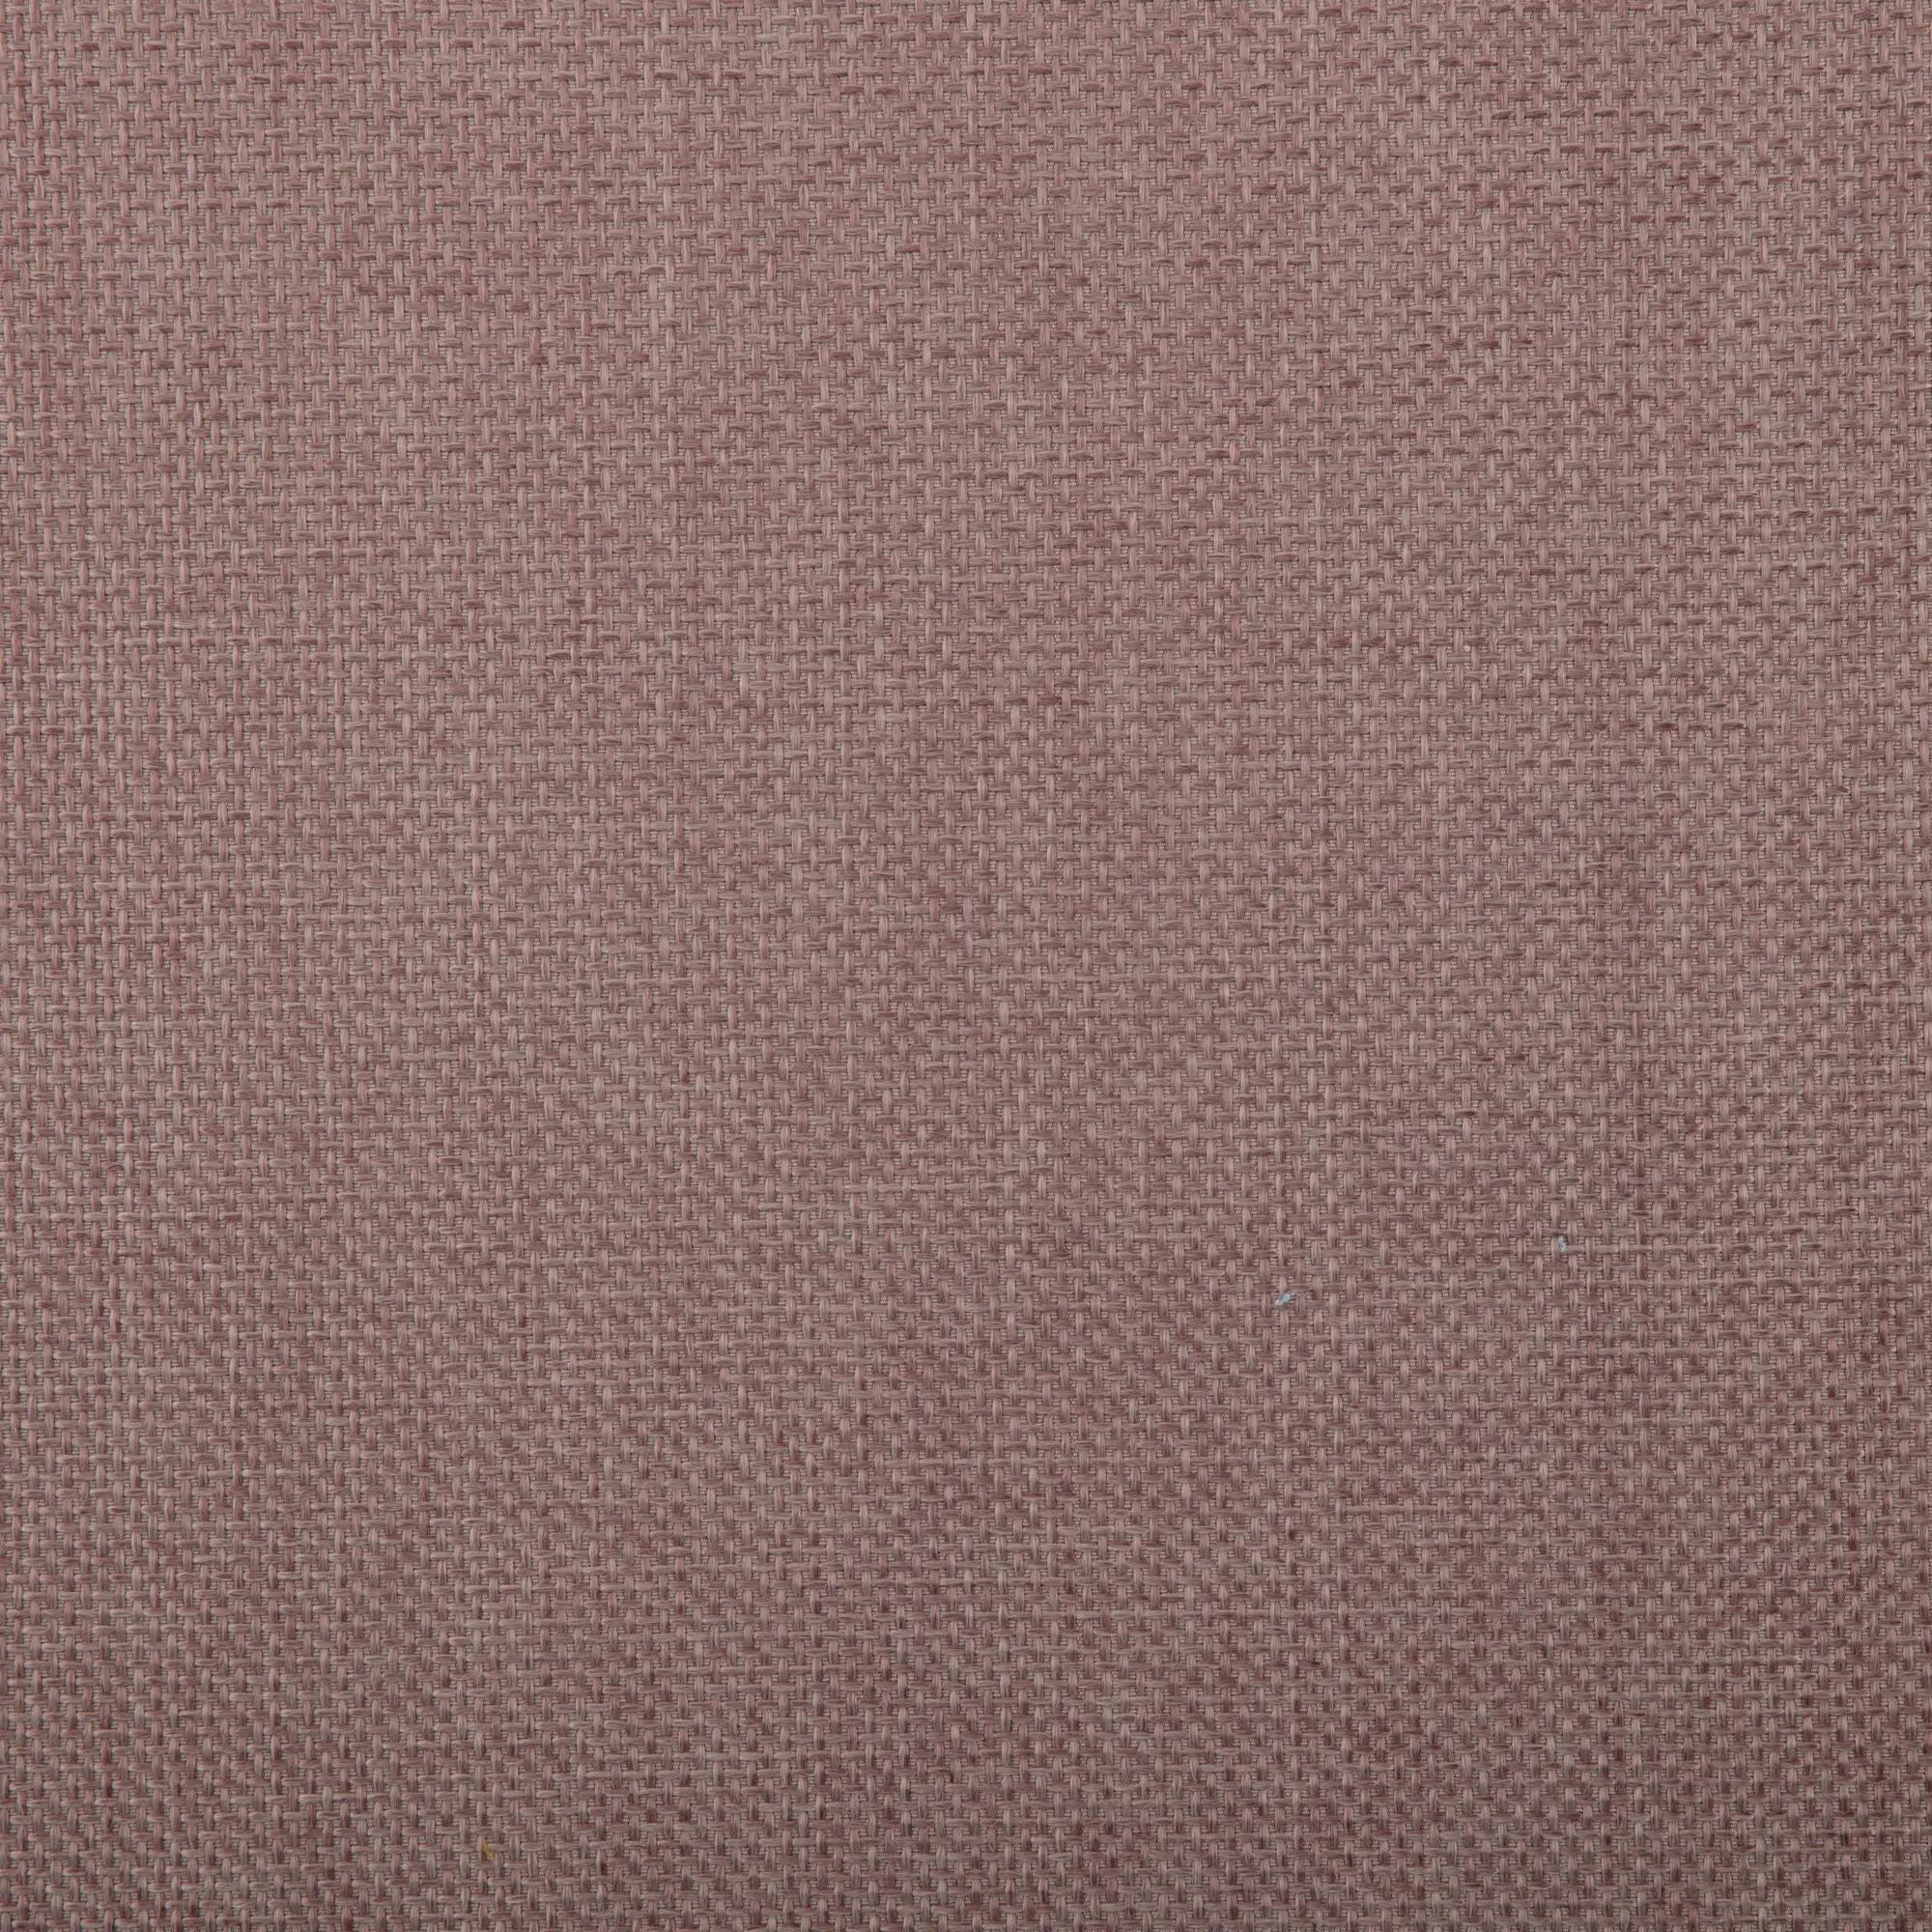 Tela al corte tapicería arpillera cindy malva ancho 138 cm